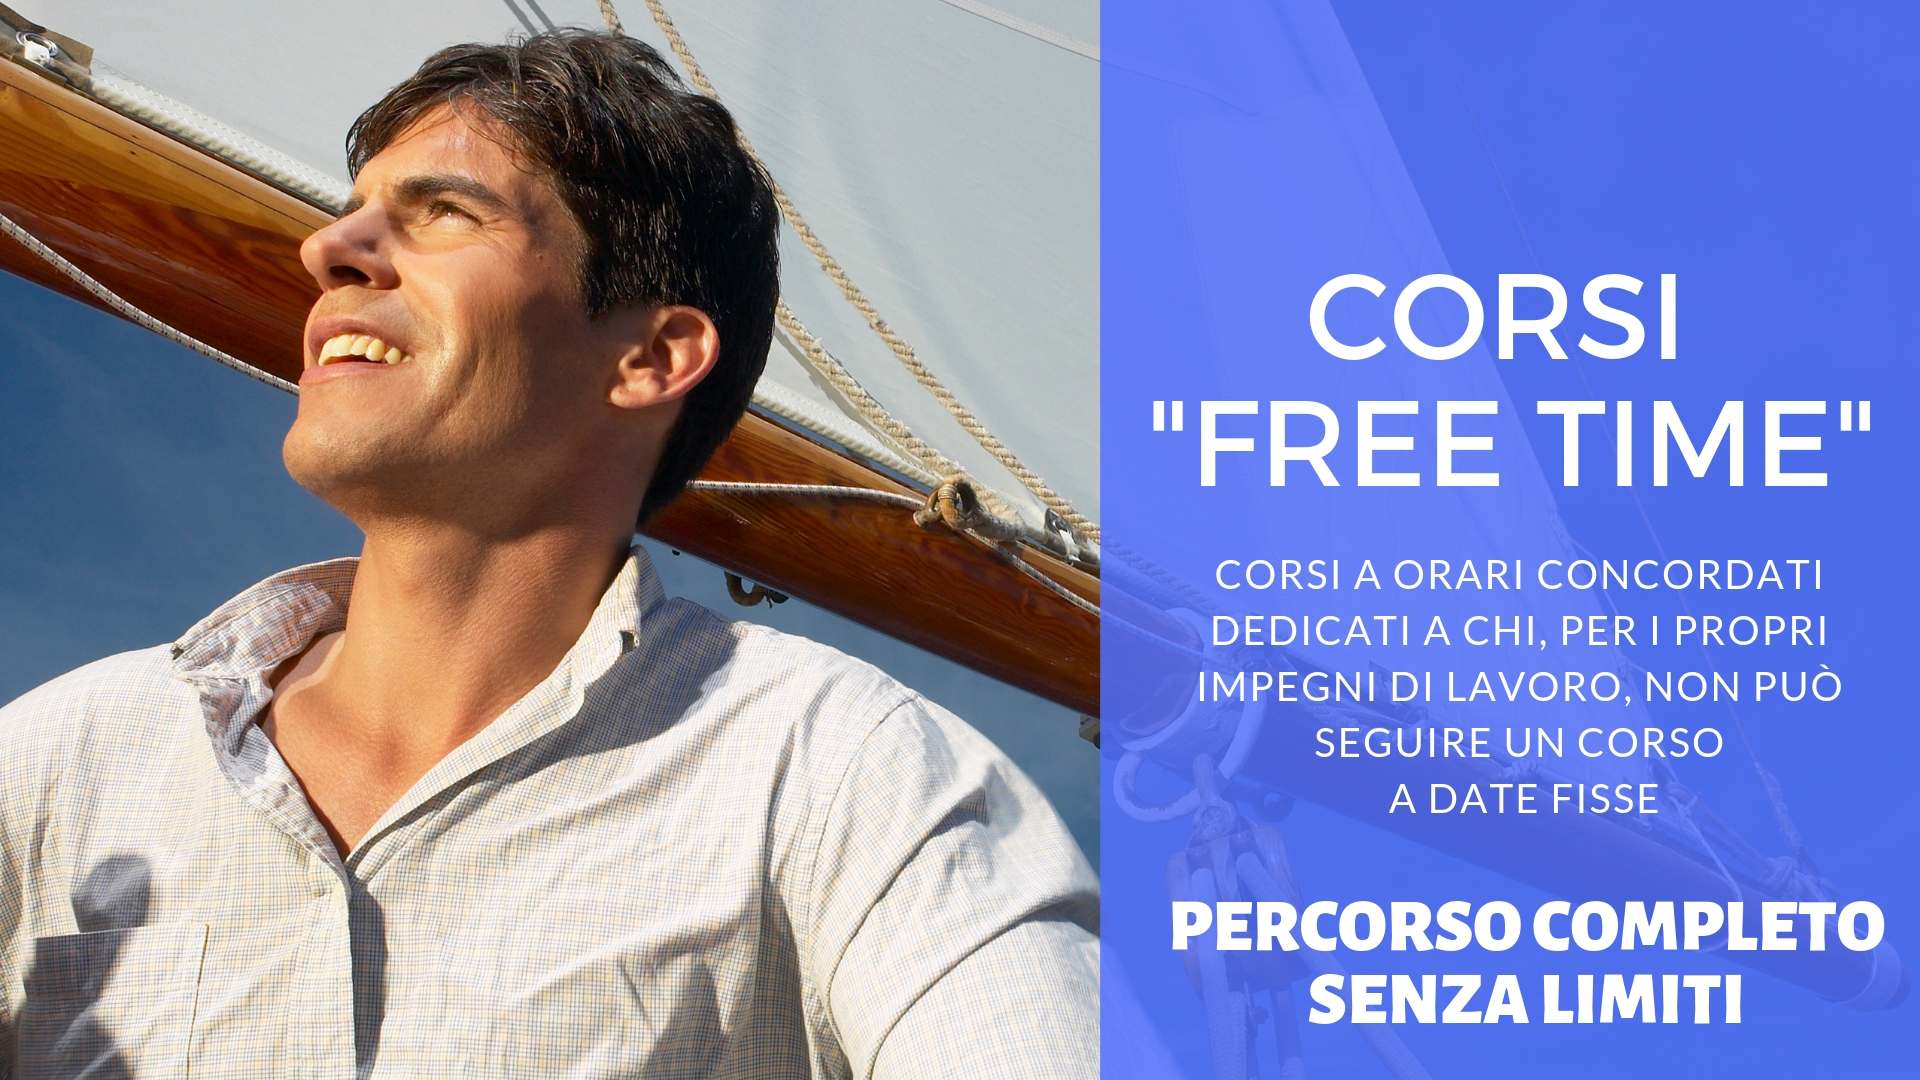 Scuola nautica Blu Oltremare Milano: CORSO FREE-TIME VELA & MOTORE senza limiti (24h individuali)